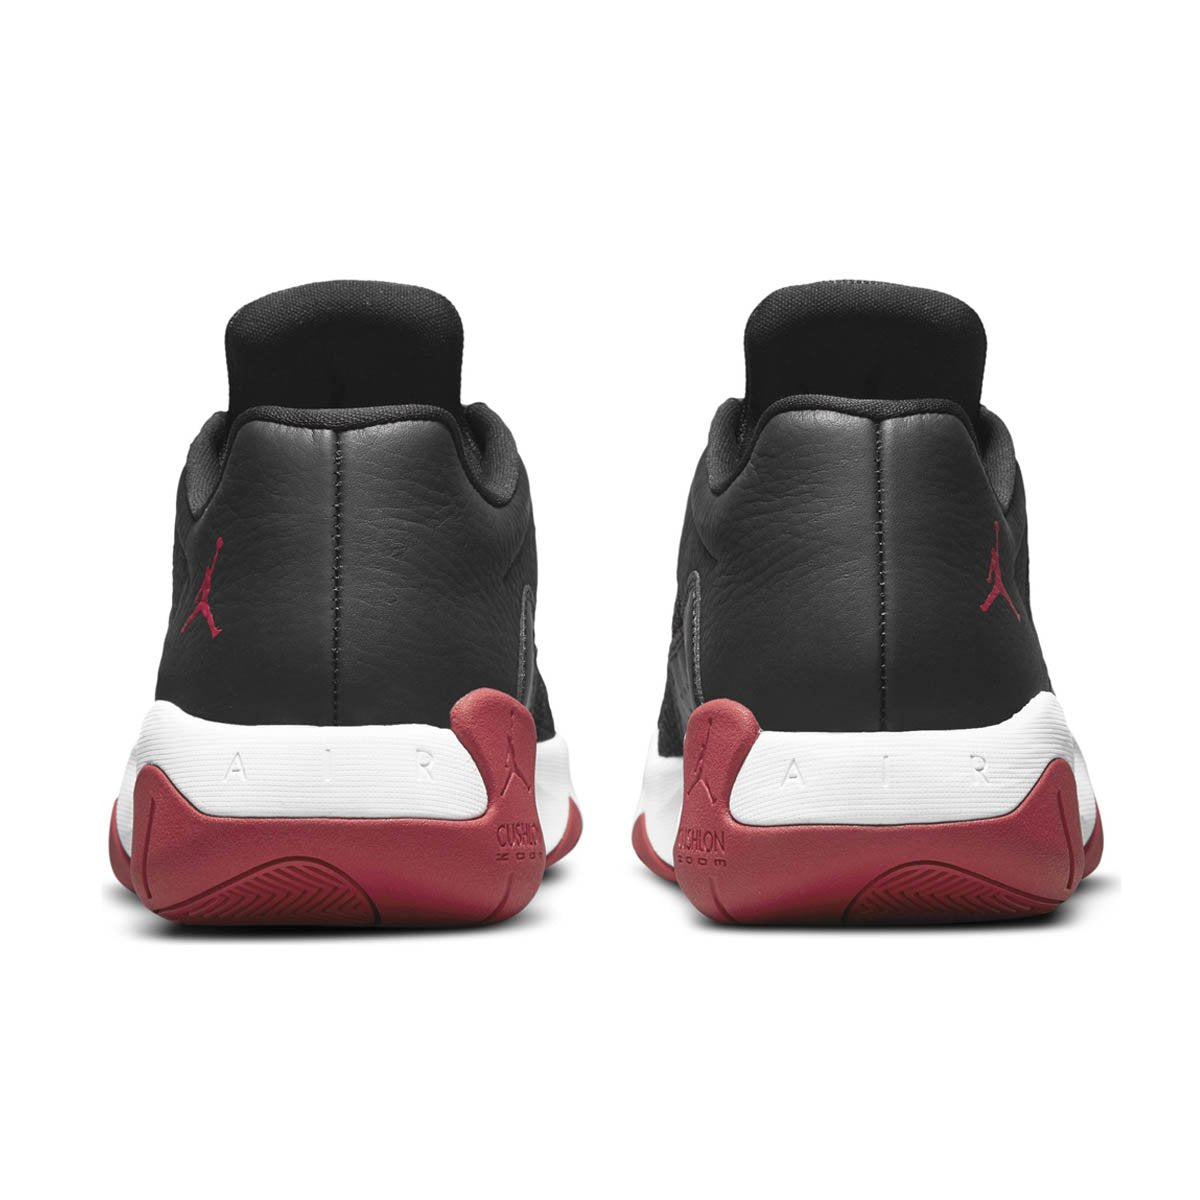 Air Jordan 11 CMFT Low Basketball Shoes